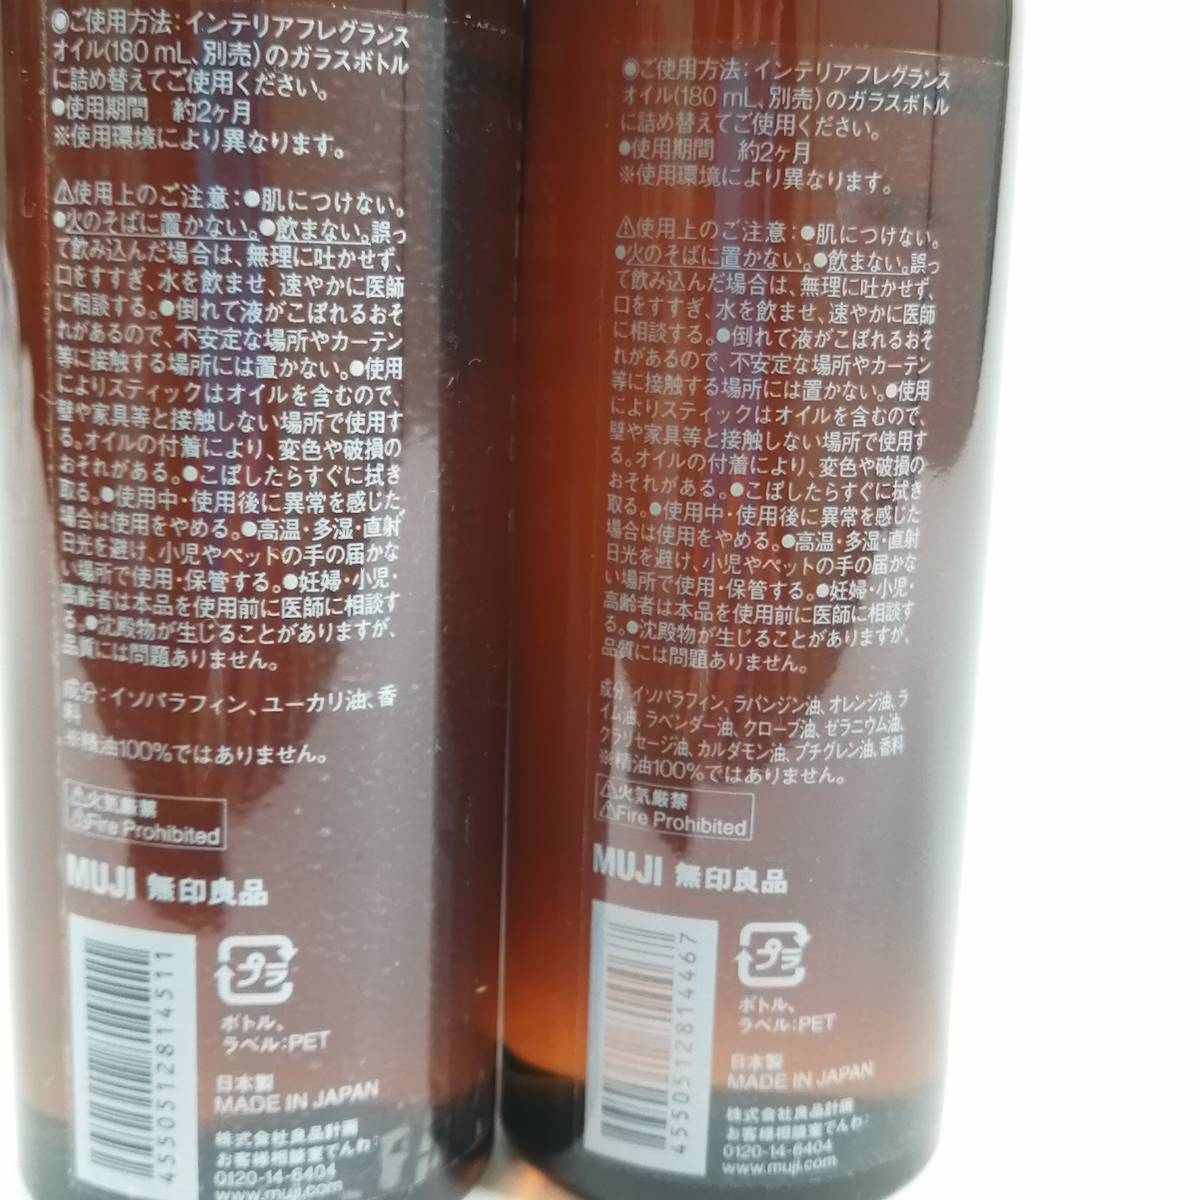 [ нераспечатанный ] Muji Ryohin 2 шт. комплект интерьер аромат масло прозрачный CLEAR & зеленый GREEN изменение содержания для 180ml (#DG3ZZ)